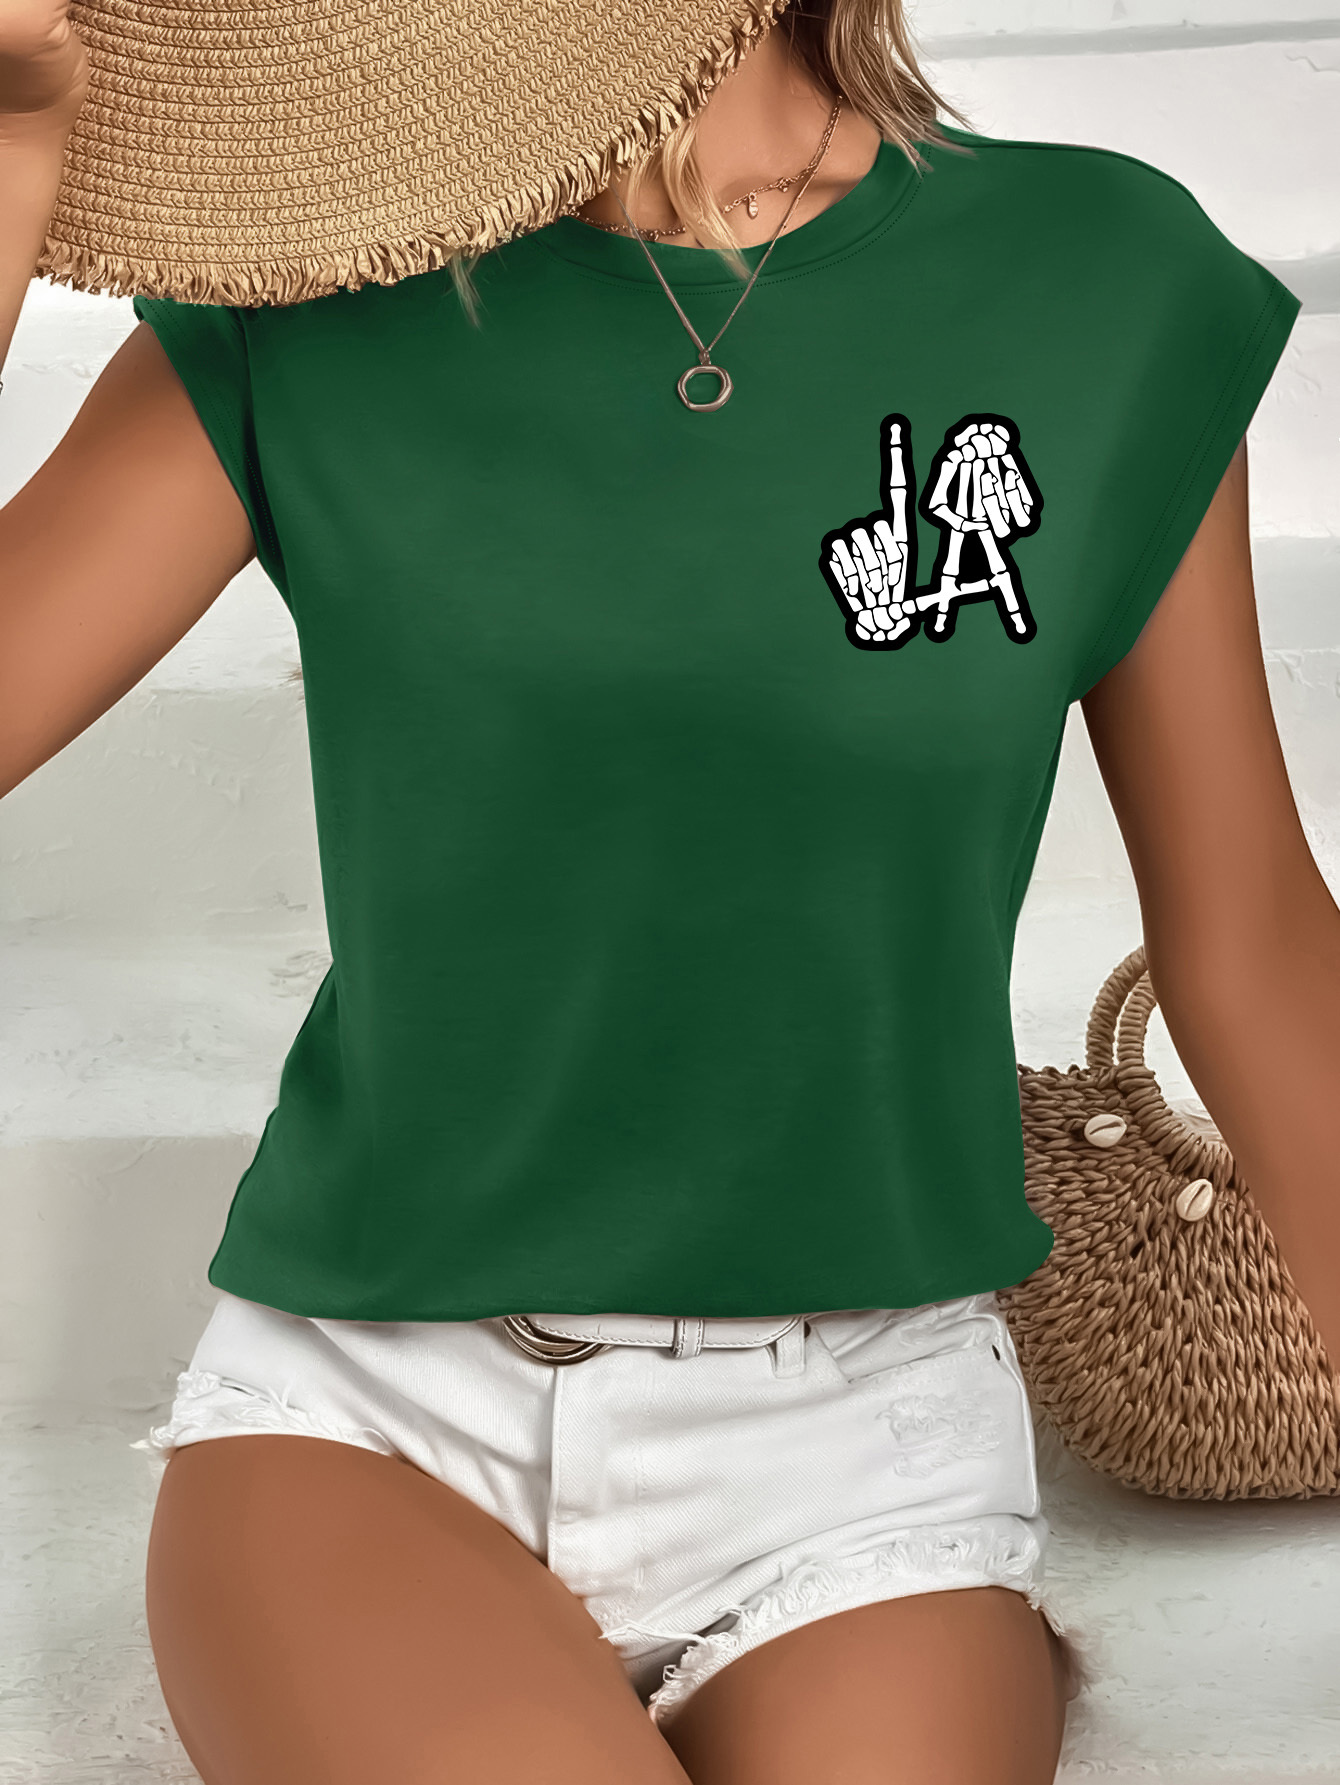 Women's T Shirts - T Shirts for Women - Matalan